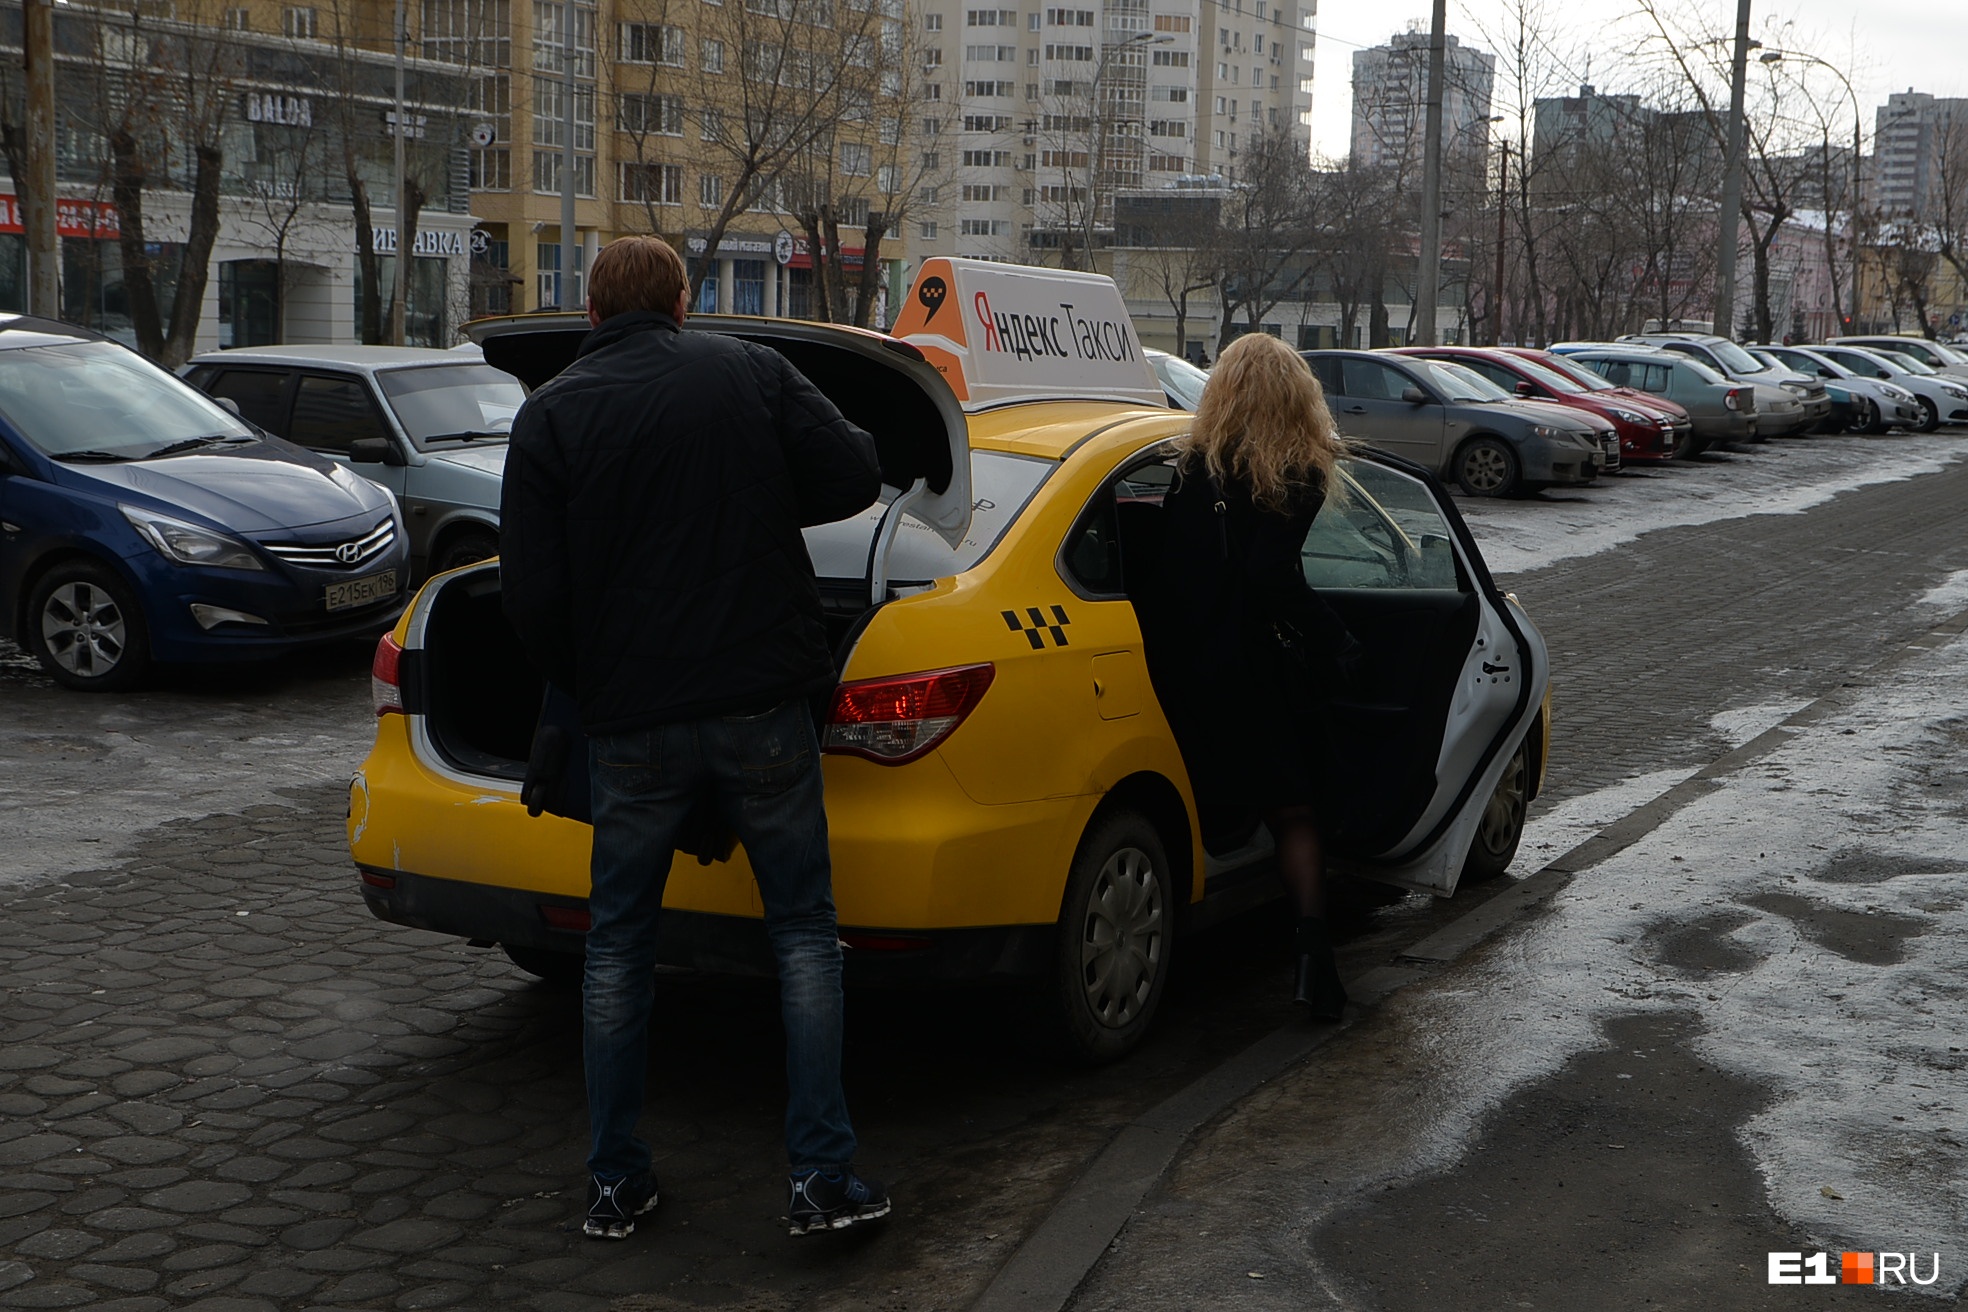 «Хомяк полдня ездил в машине»: топ-5 самых необычных находок в такси